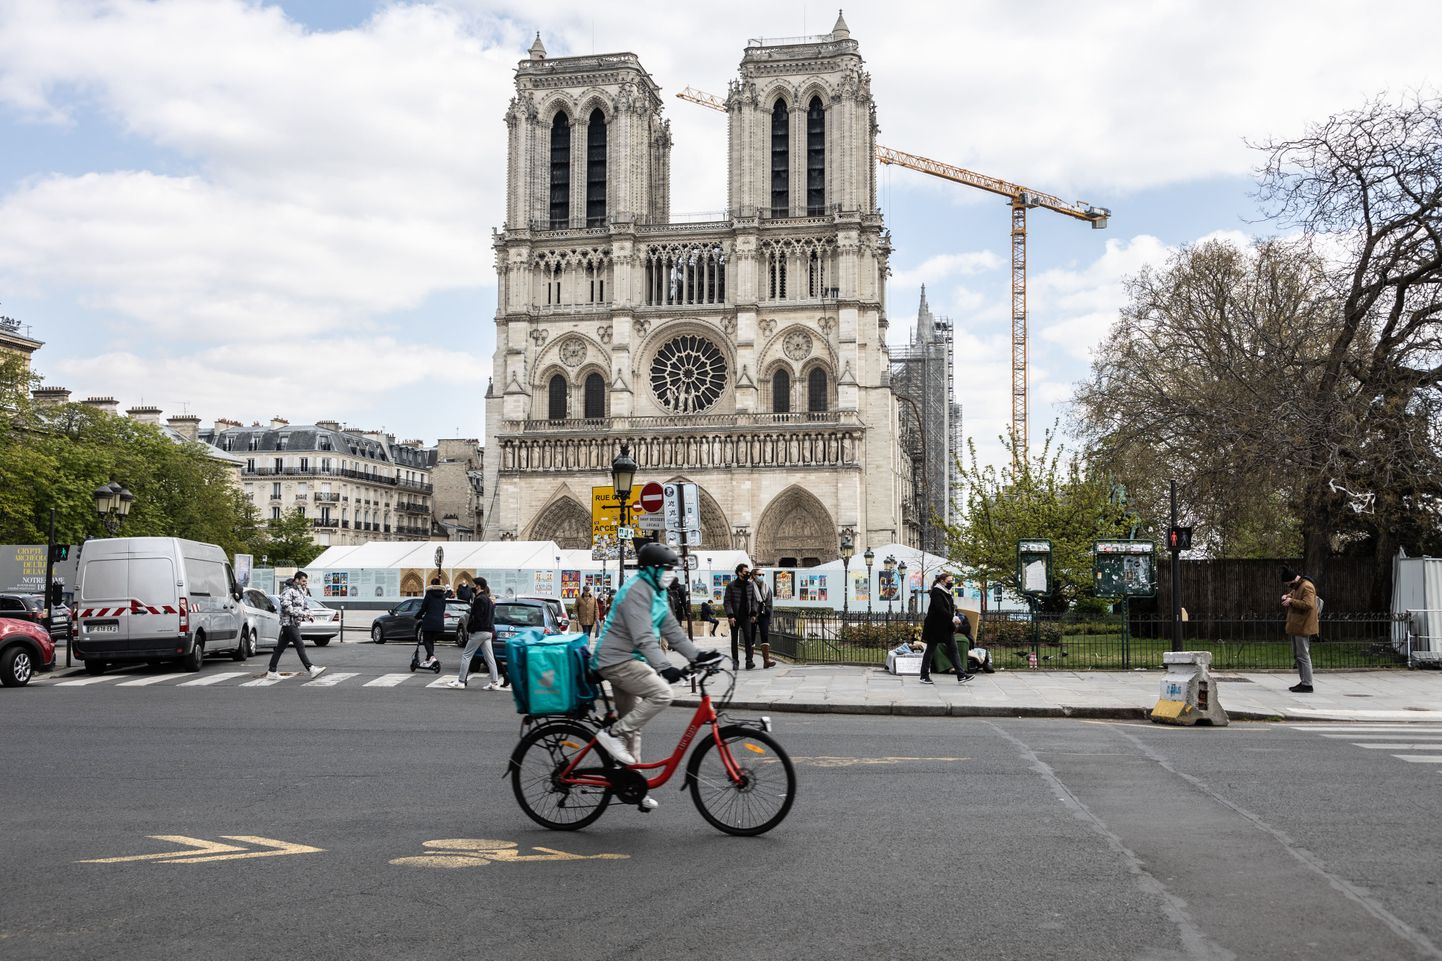 Notre Dame'i katedraal kaks aastat pärast tulekahju.